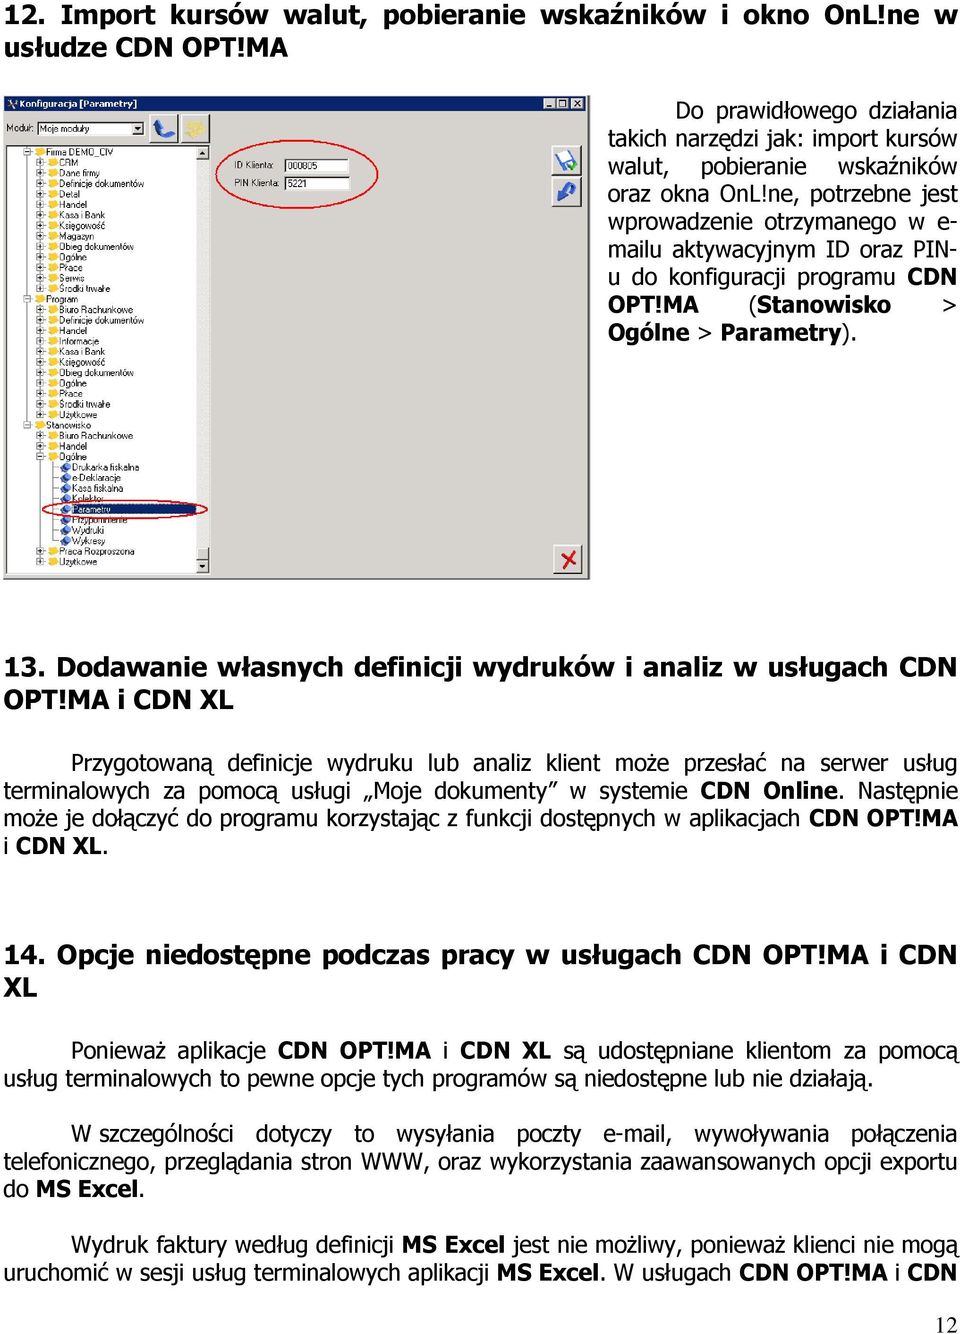 Dodawanie własnych definicji wydruków i analiz w usługach CDN OPT!